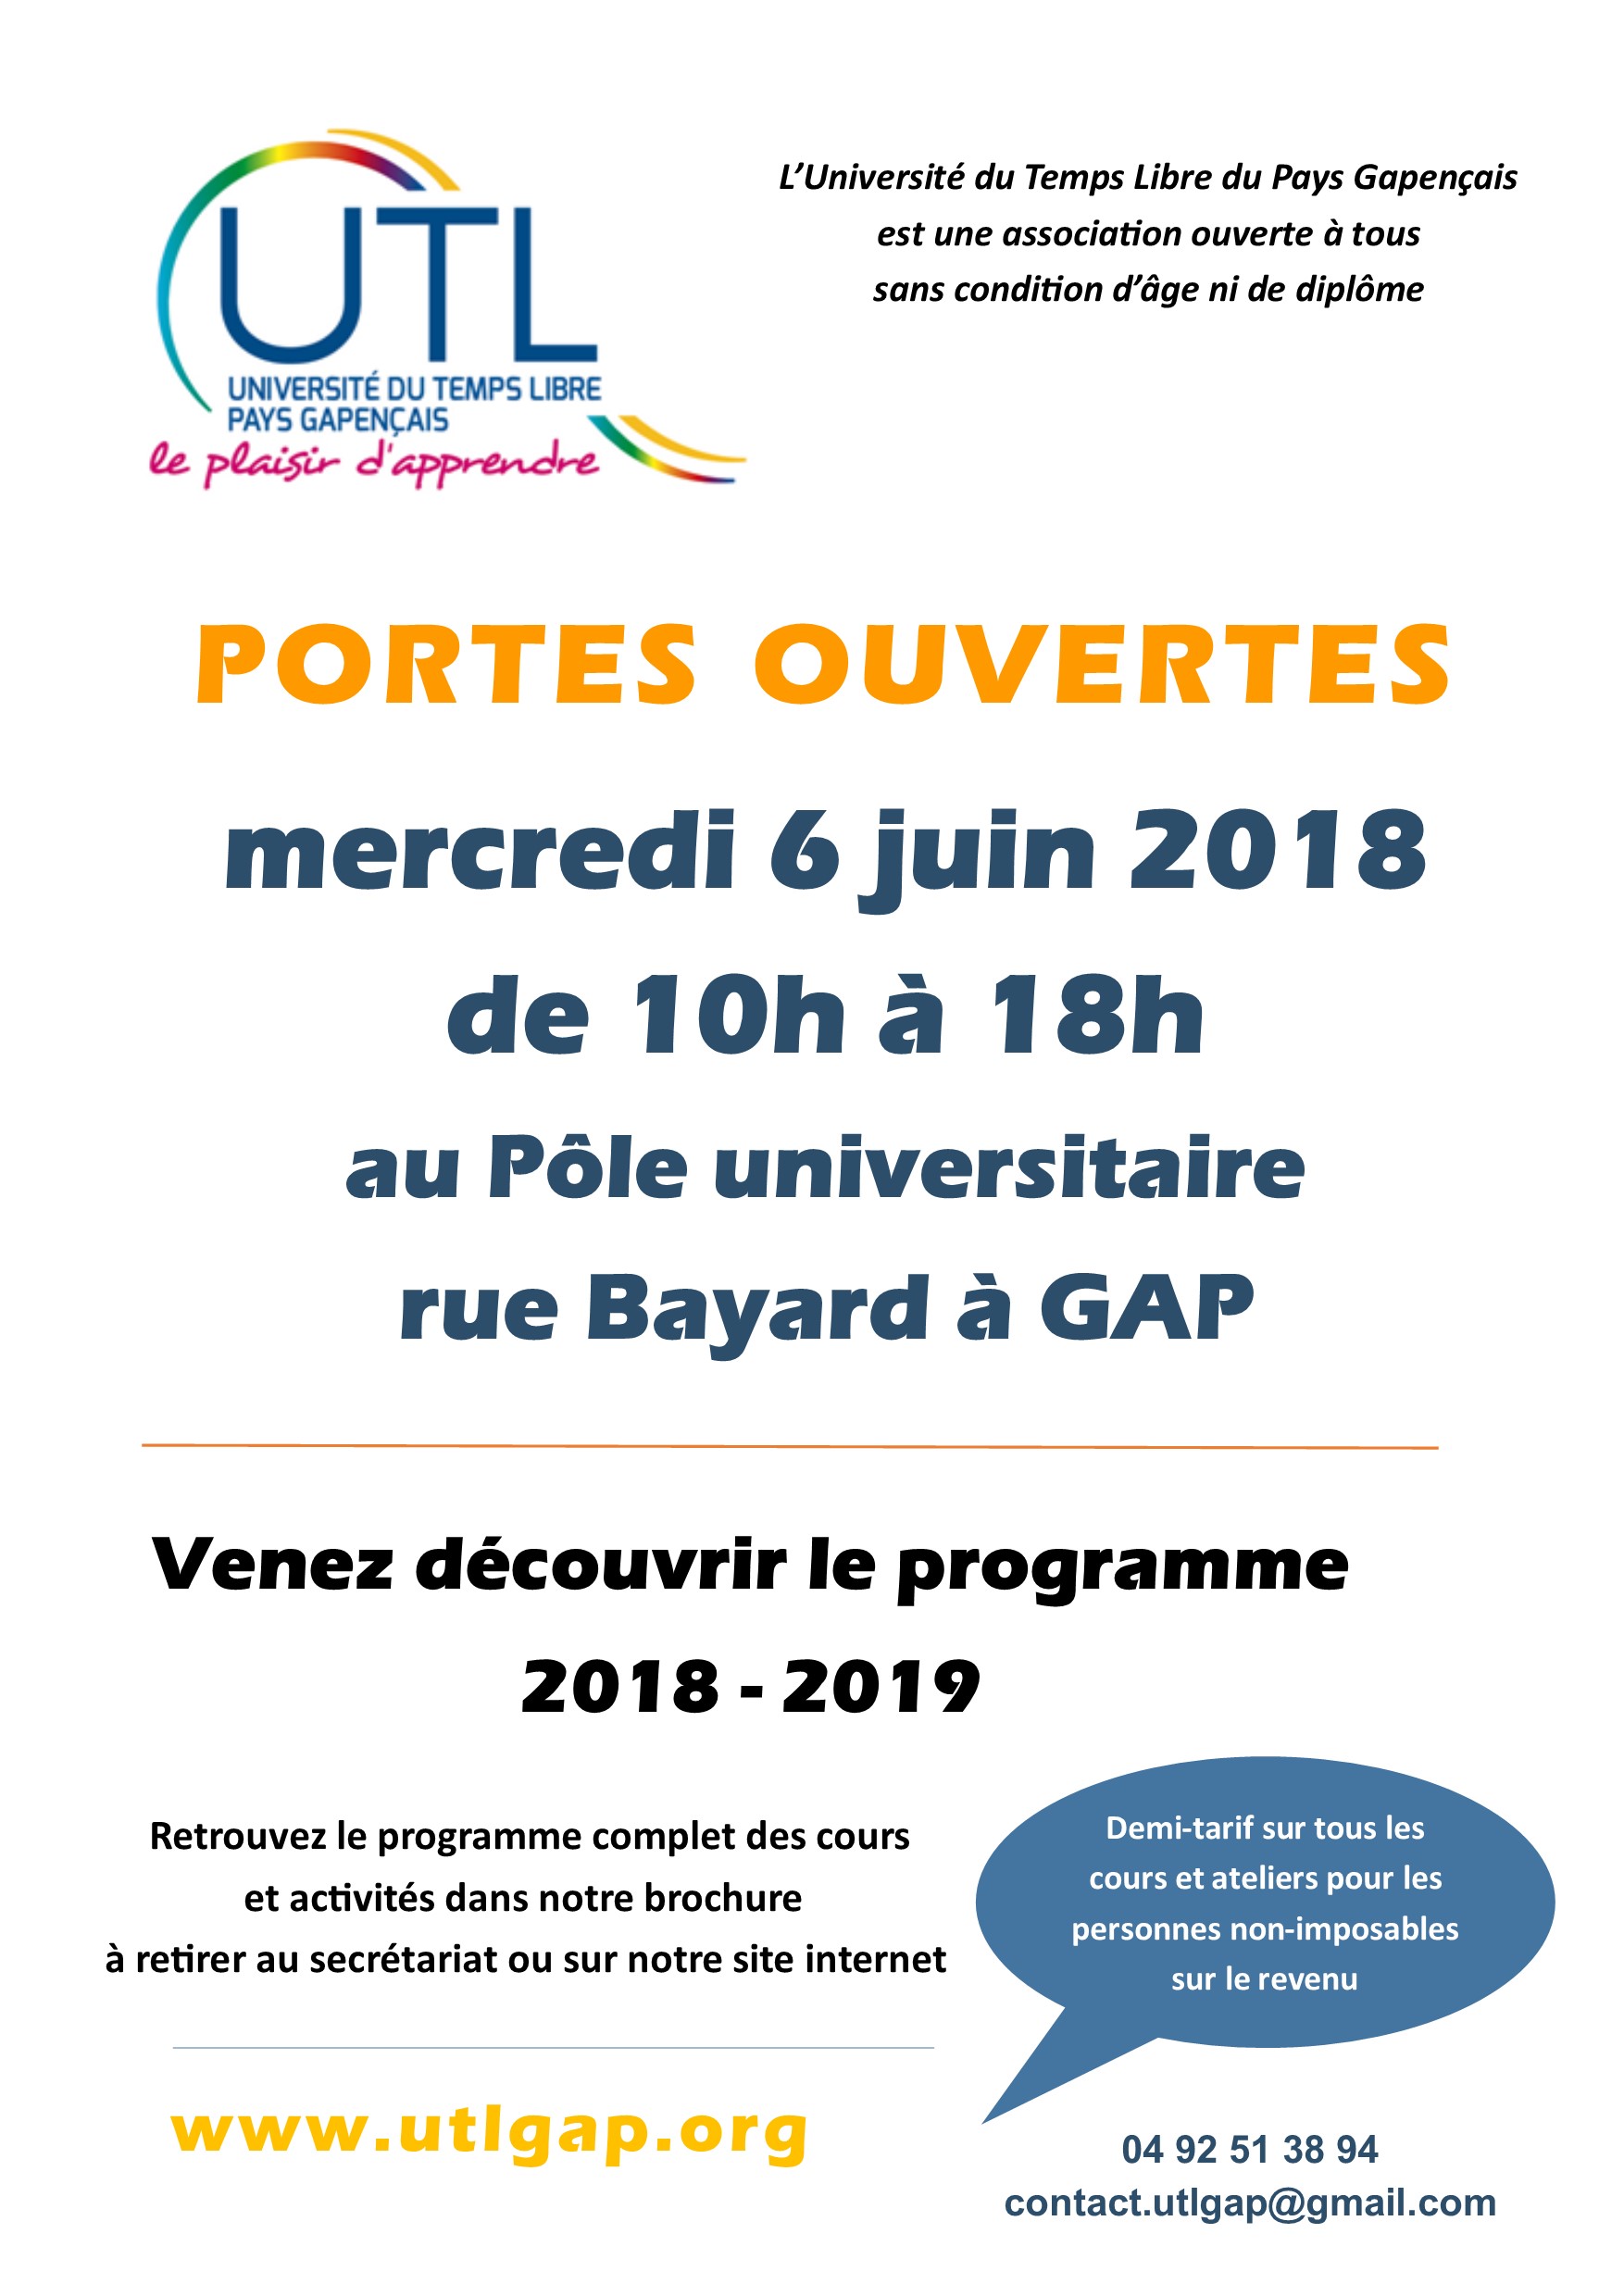 Portes ouvertes de l'Université du Temps Libre de Gap le 6 juin 2018 de 10h à 18h